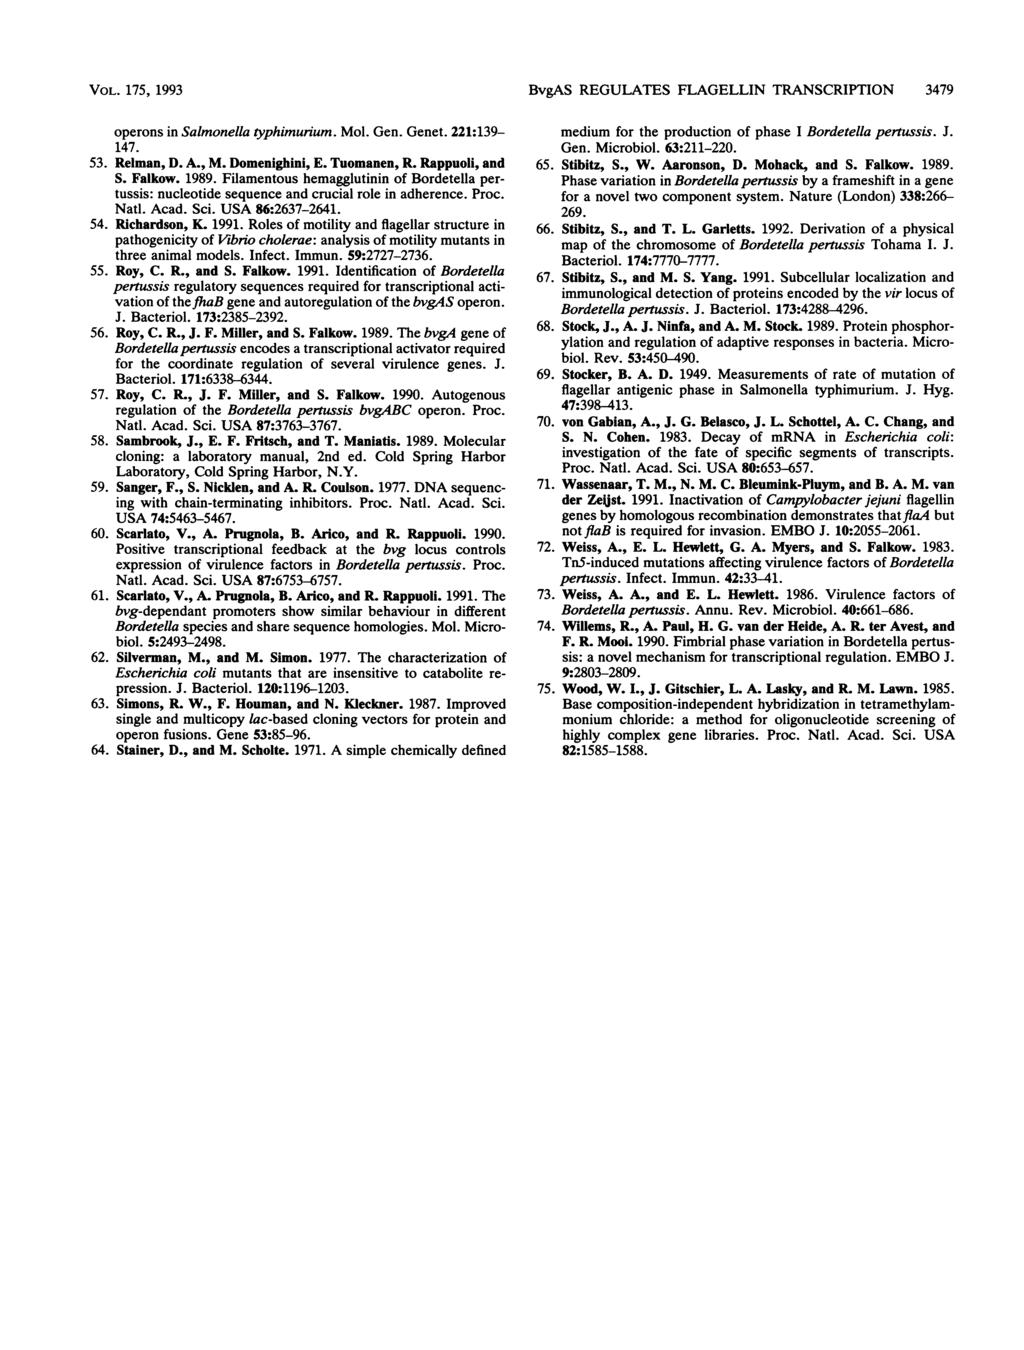 VOL. 175, 1993 operons in Salmonella typhimurium. Mol. Gen. Genet. 221:139-147. 53. Relman, D. A., M. Domenighini, E. Tuomanen, R. Rappuoli, and S. Falkow. 1989.